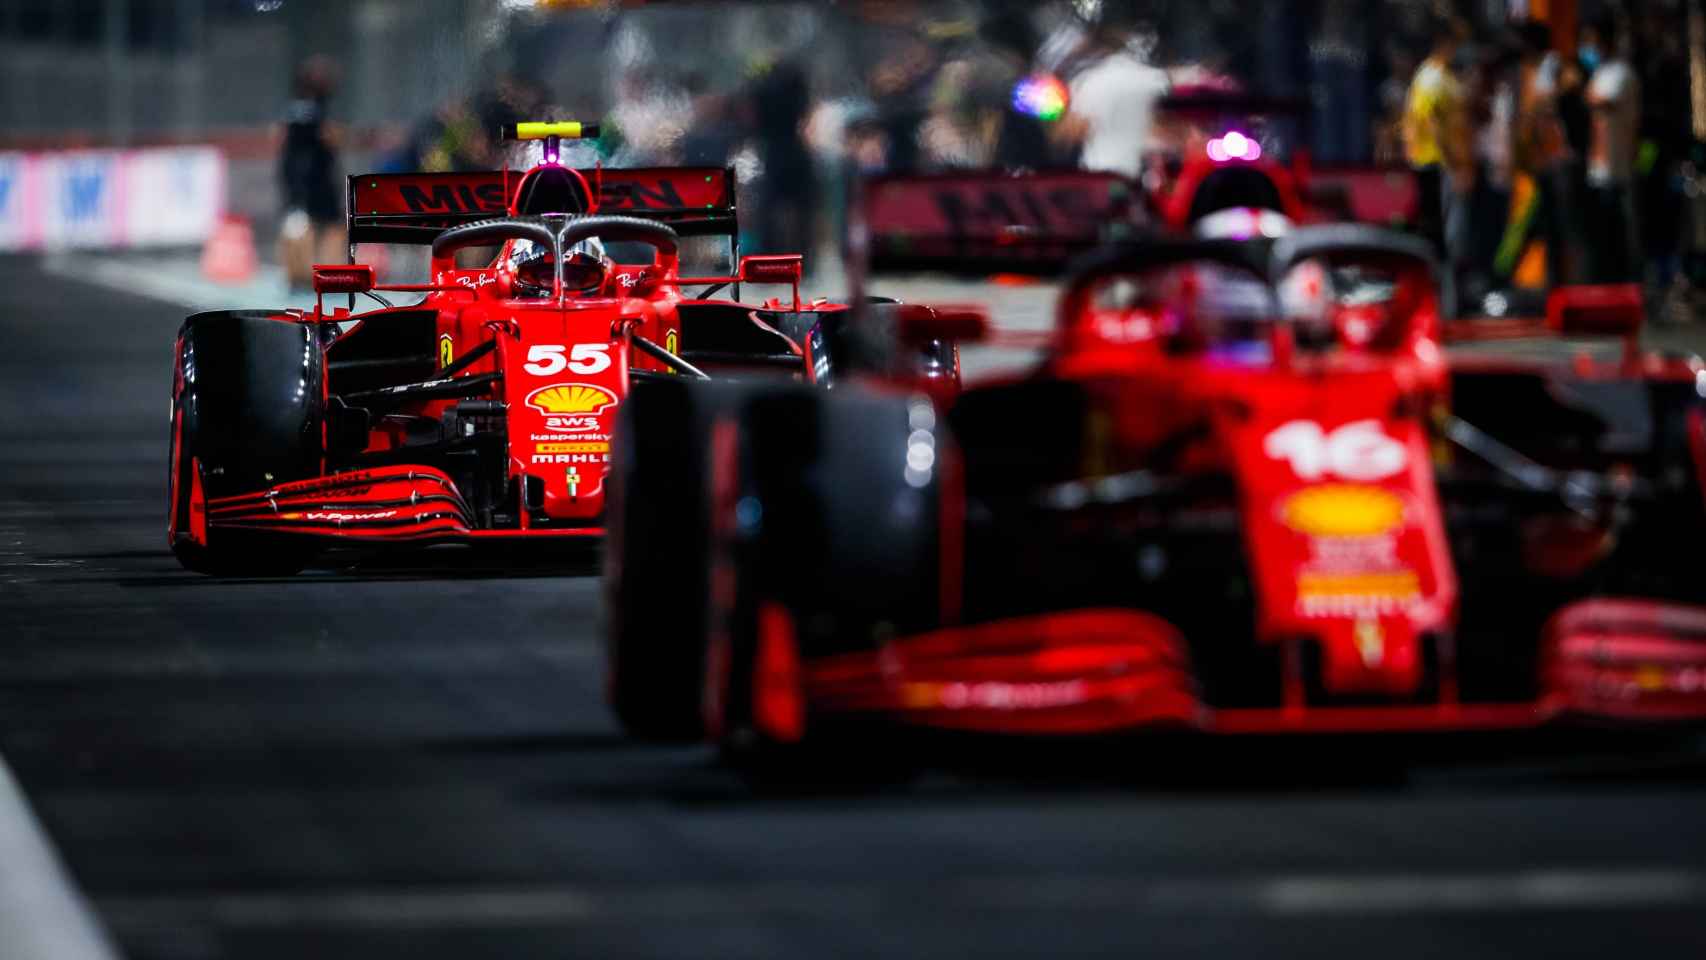 Carlos Sainz rodando por detrás de Leclerc en el pit lane de Arabia Saudí